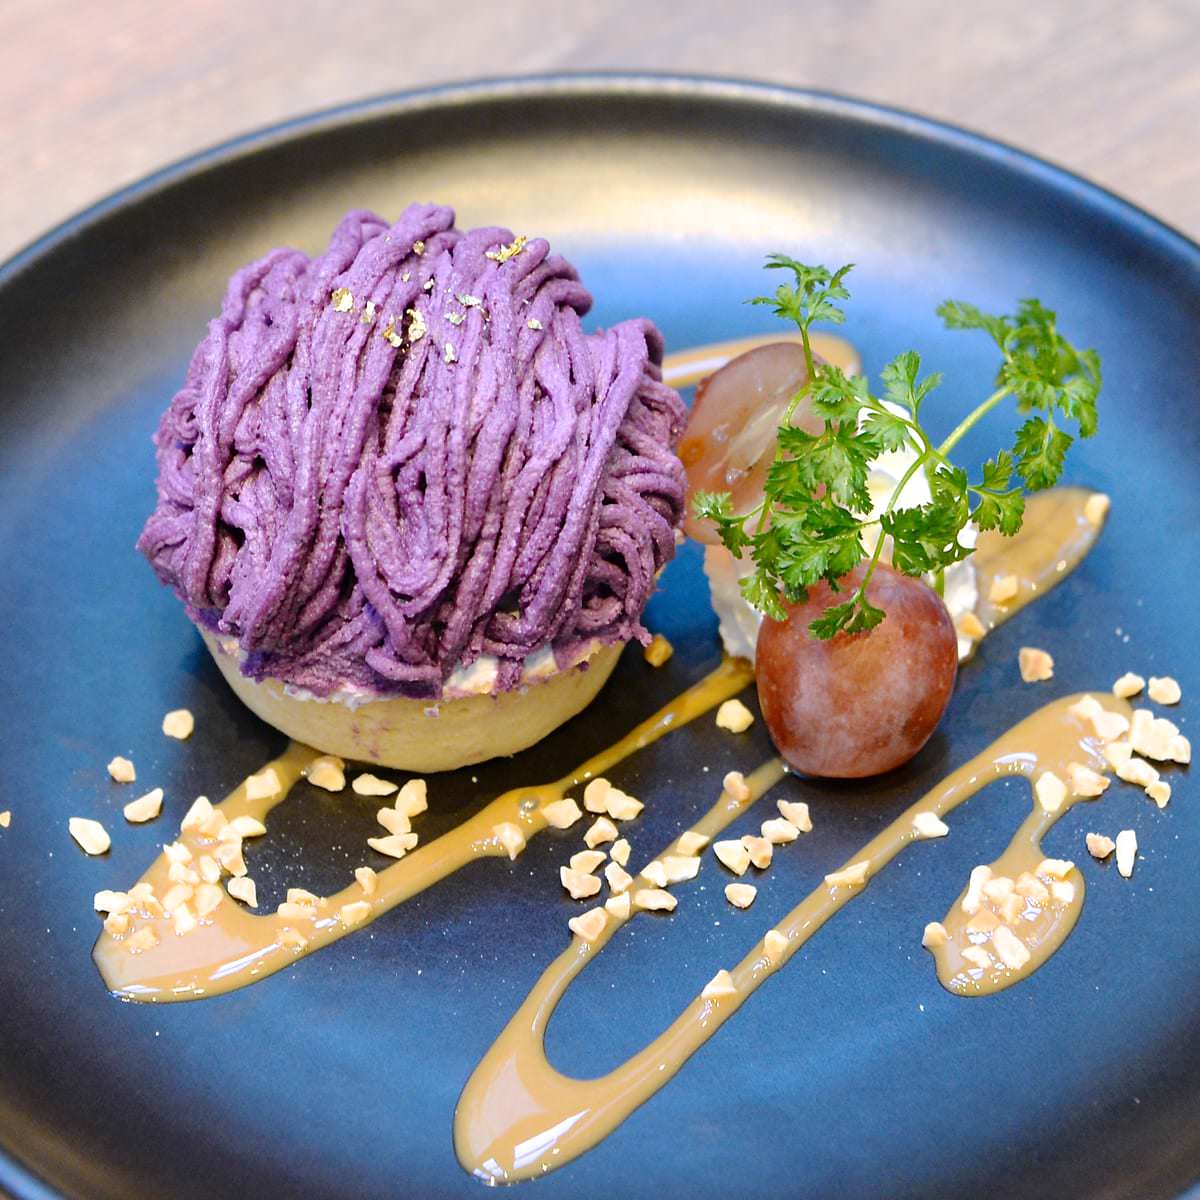 へし切長谷部の紫芋モンブラン